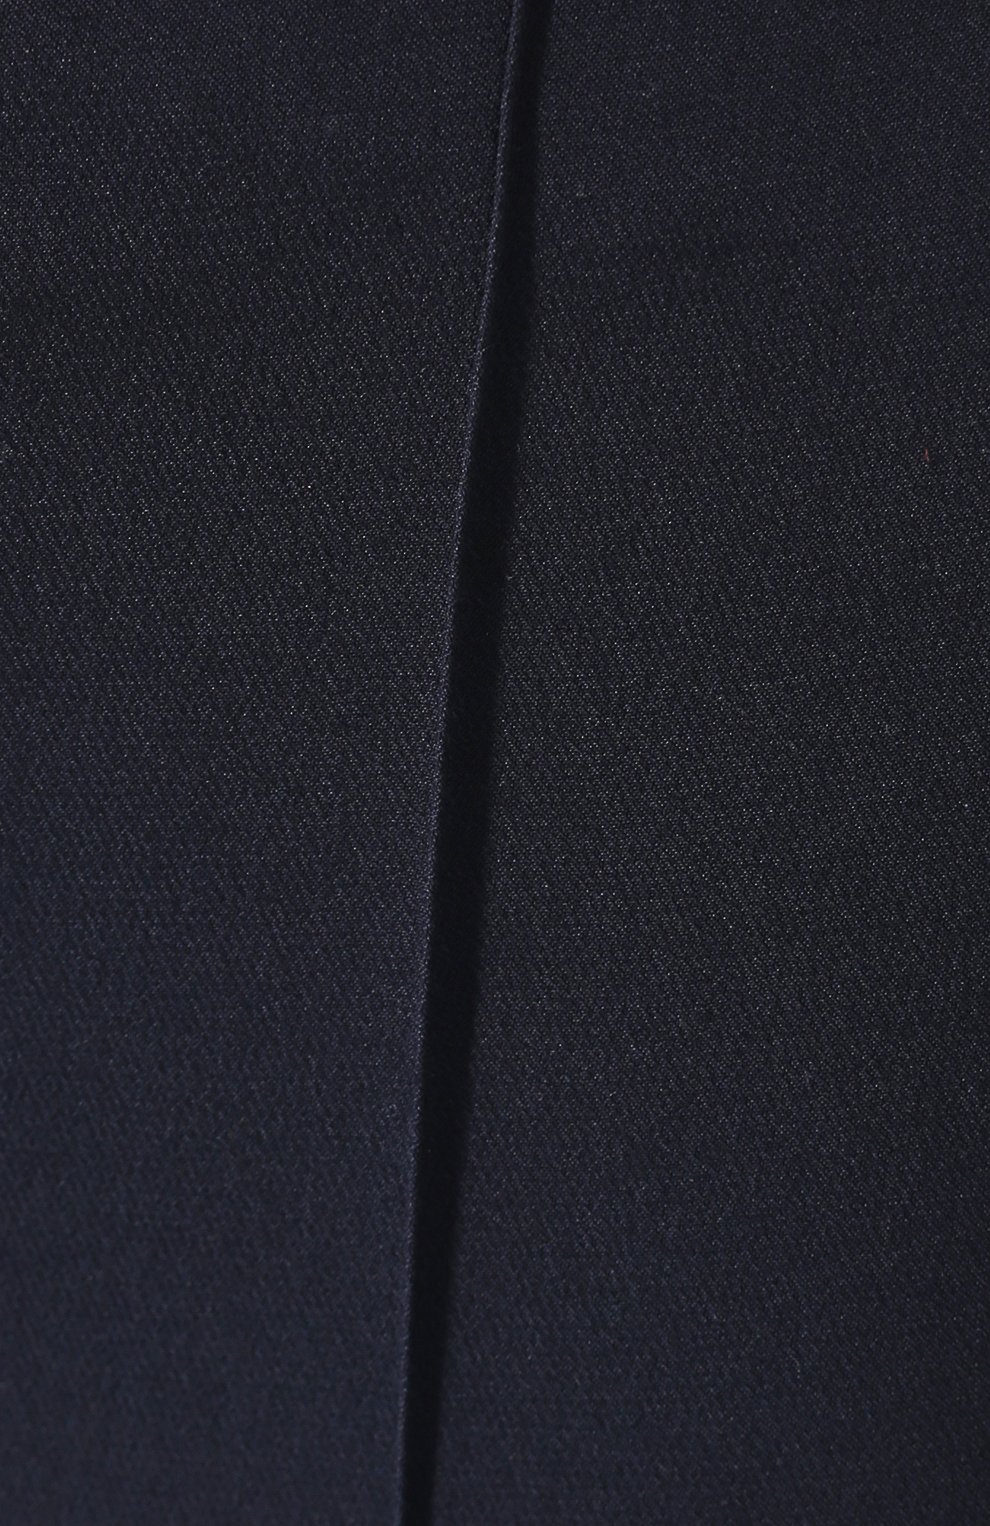 Женские брюки из смеси шелка и шерсти LORO PIANA темно-синего цвета, арт. FAI5260 | Фото 5 (Материал внешний: Шелк; Женское Кросс-КТ: Брюки-одежда; Силуэт Ж (брюки и джинсы): Прямые; Региональные ограничения белый список (Axapta Mercury): RU; Статус проверки: Проверено, Проверена категория; Длина (брюки, джинсы): Укороченные; Стили: Кэжуэл)